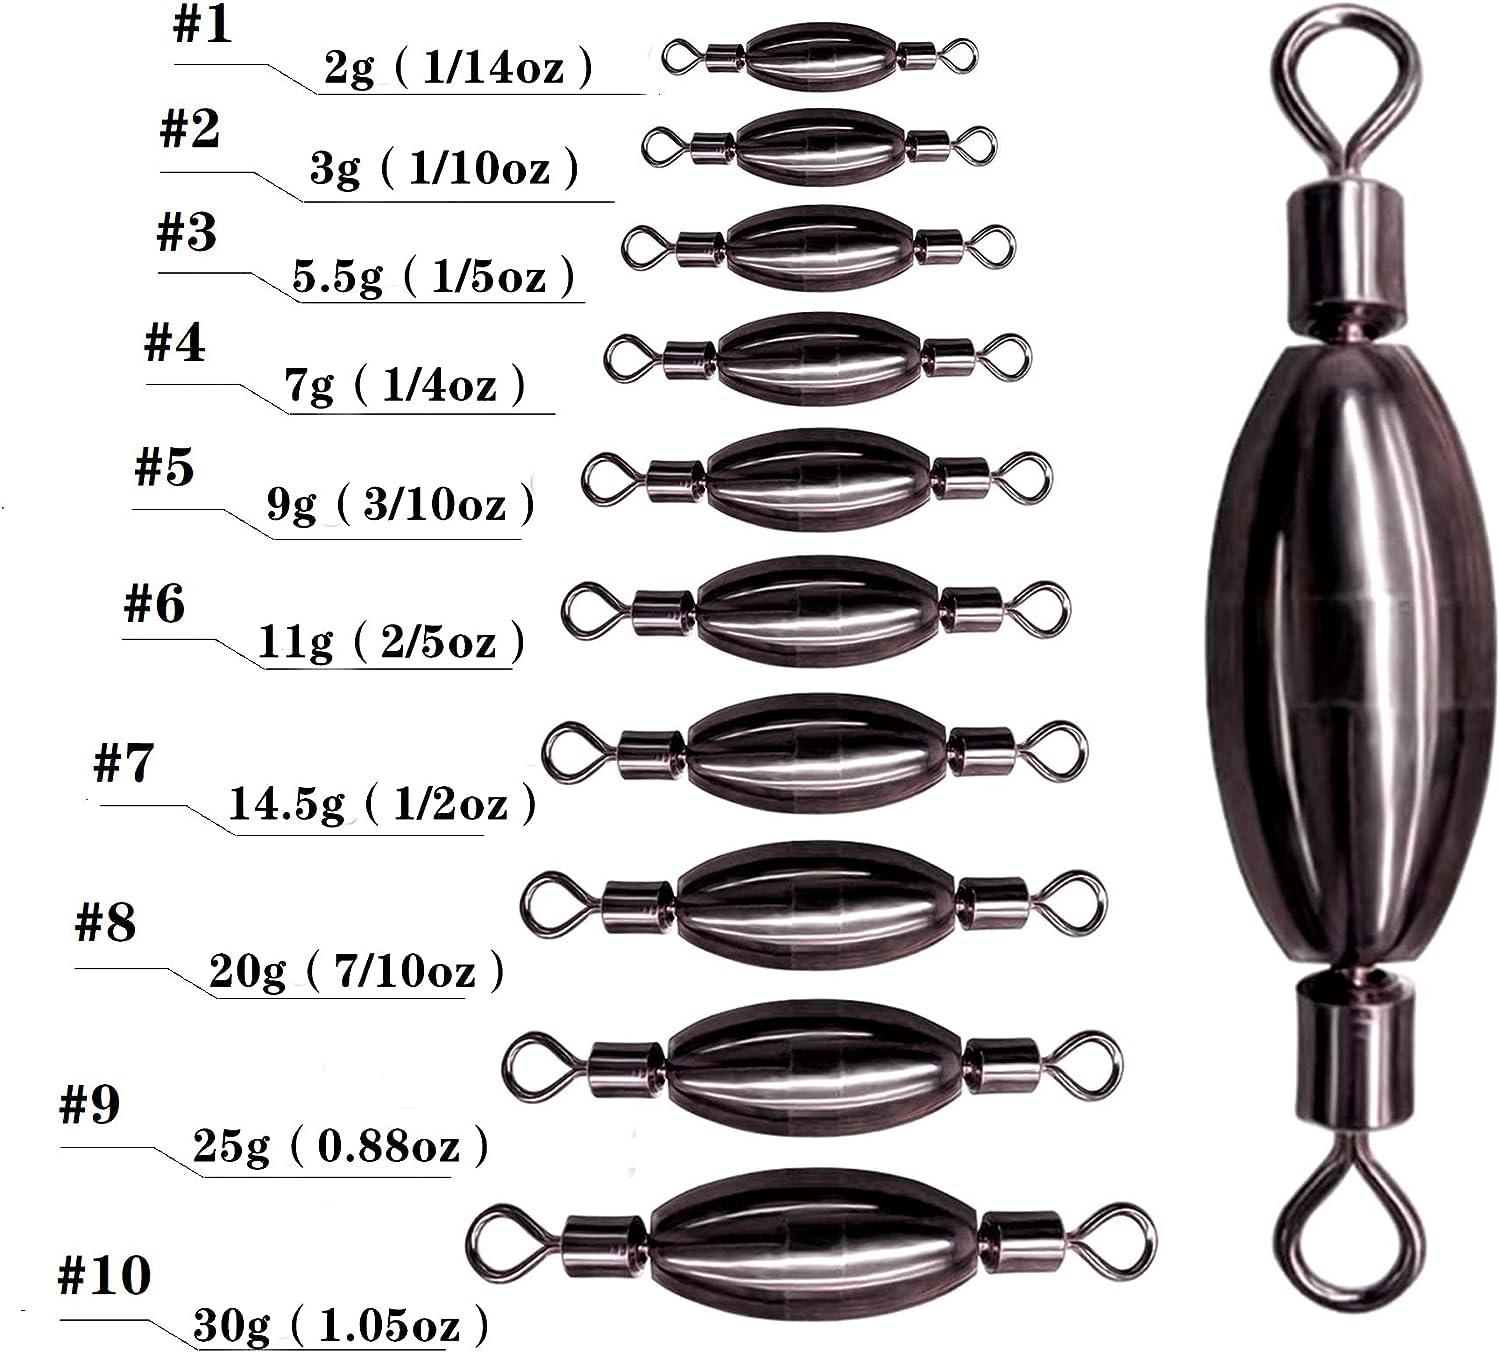  25 Pcs. Trolling Sinker Weights Lead Fishing Set Sinkers Tackle  Kit 5/8 Oz. W/7 Brass Barrel Swivel : Sports & Outdoors